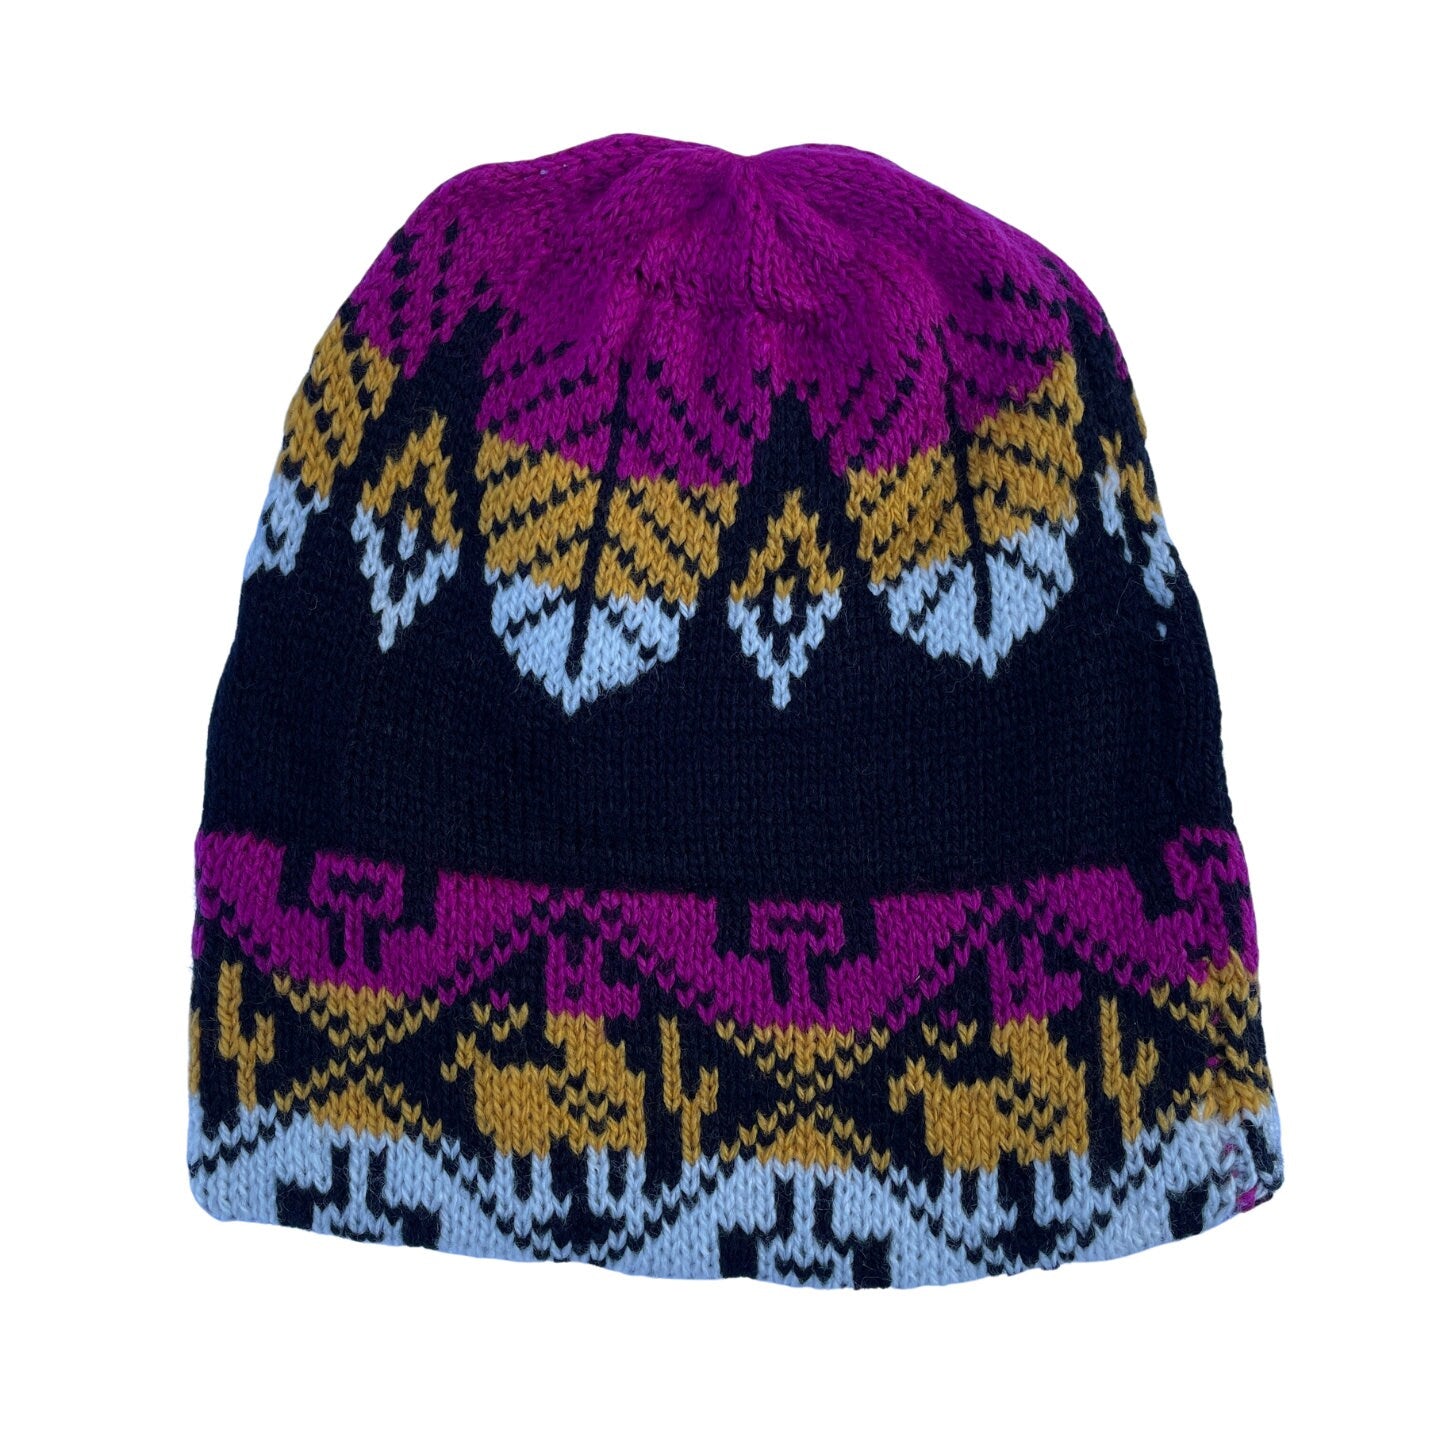 Soft Knitted Alpaca Beanie Hat | Magenta Black